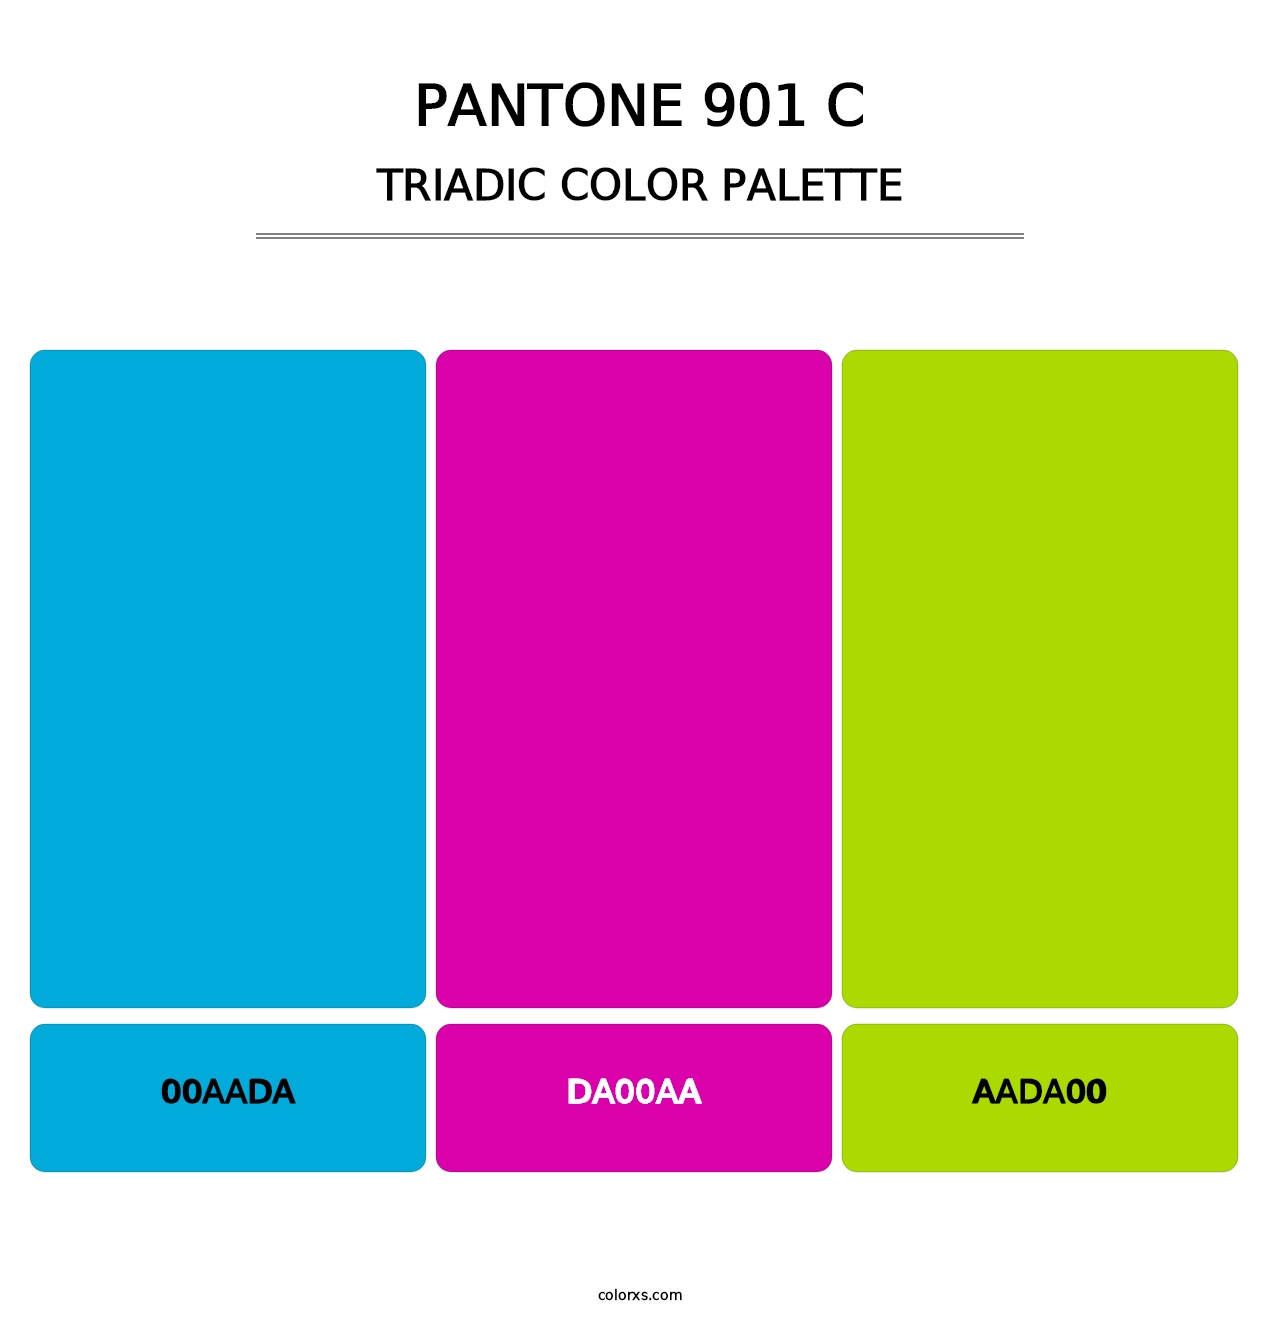 PANTONE 901 C - Triadic Color Palette